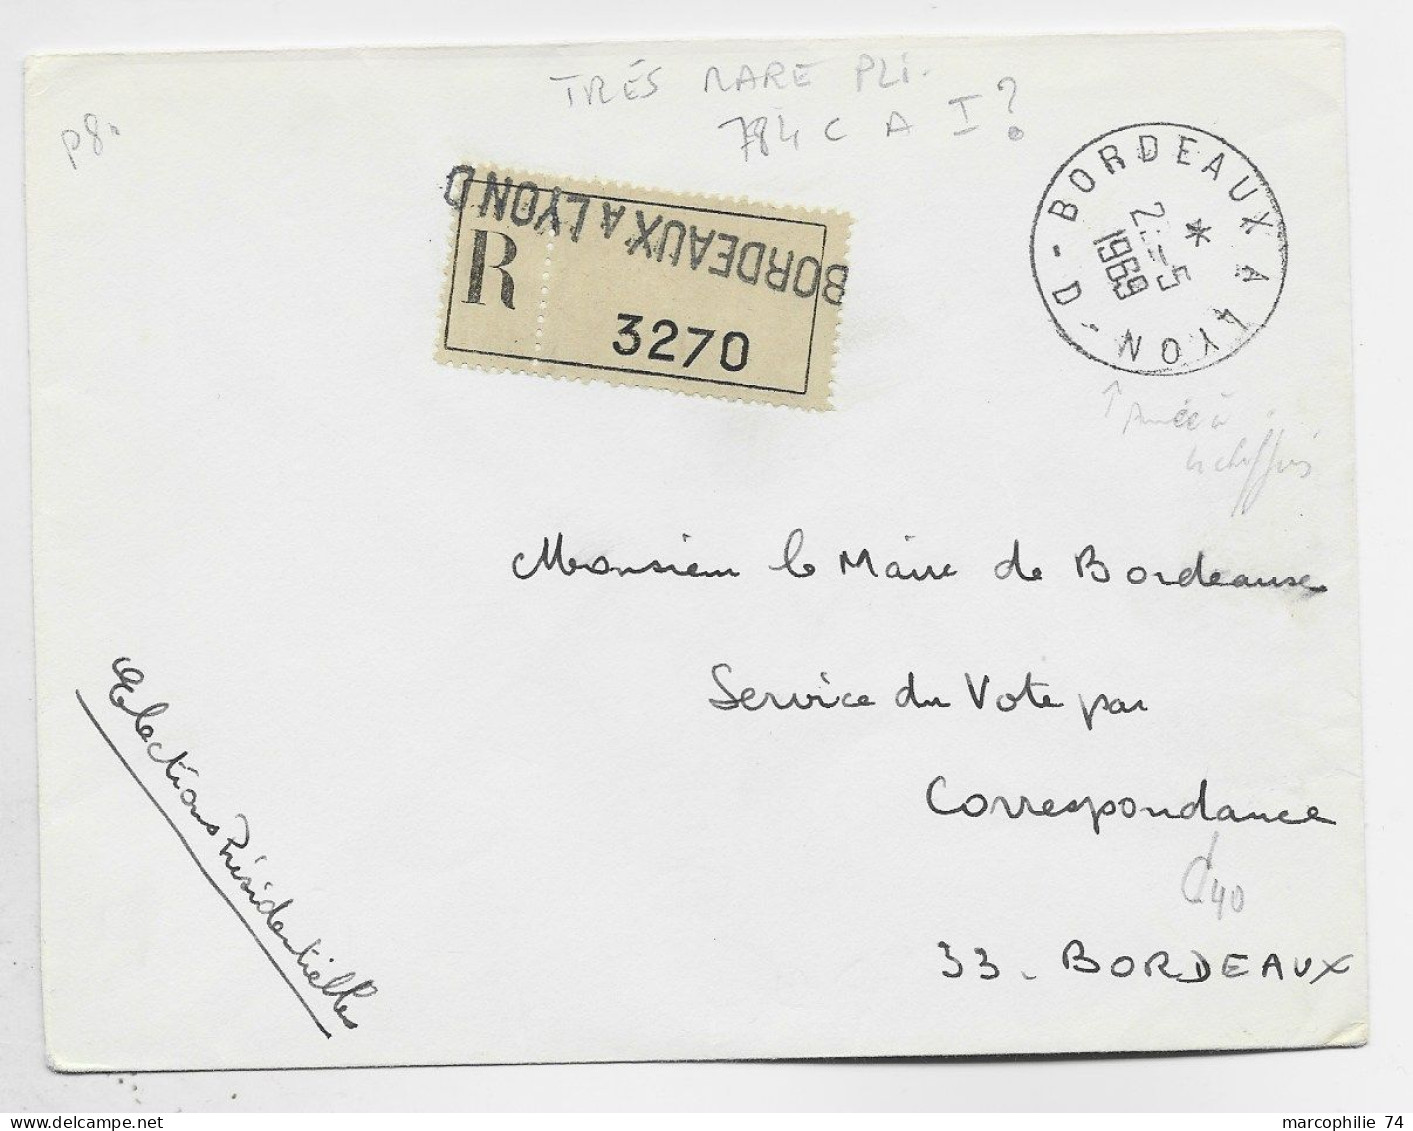 FRANCE LETTRE REC FRANCHISE MAIRIE ELECTION AMBULANT BORDEAUX A LYON 2.5.1969 D RARE - Correo Ferroviario